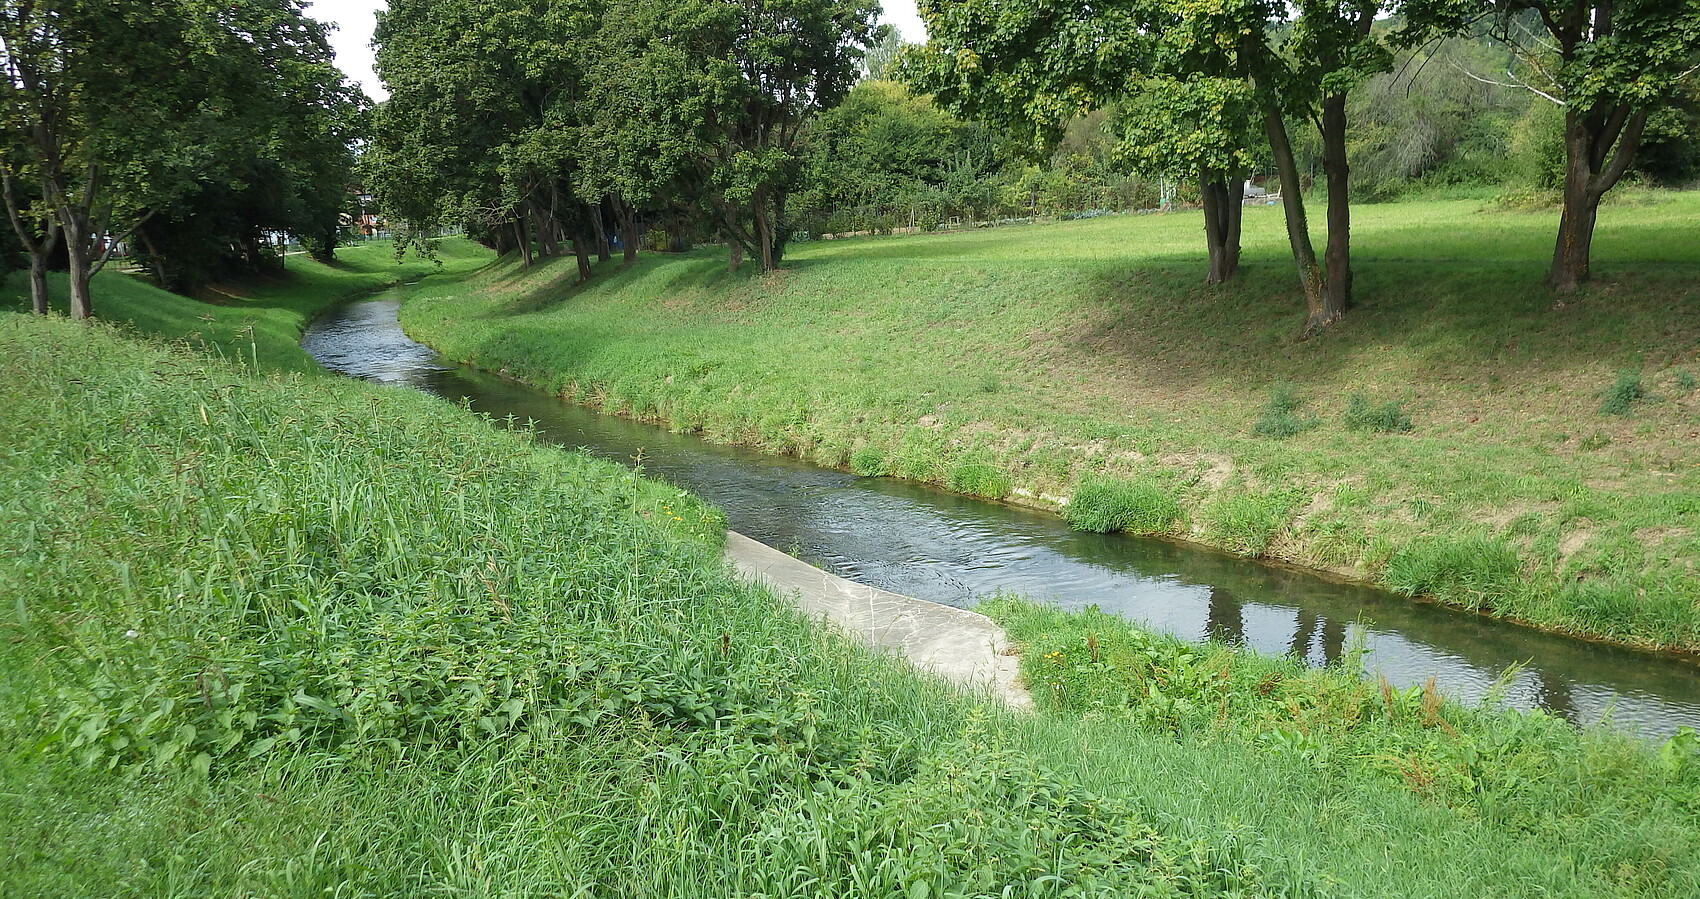 Die Pfinz in Berghausen. Das Gewässerbett der Pfinz ist von grasbewachsenen Böschungen begrenzt. Auf den Böschungen stehen abschnittsweise Bäume. Die Pfinz fließt gleichmäßig in ihrem immer gleich breiten Gewässerbett.